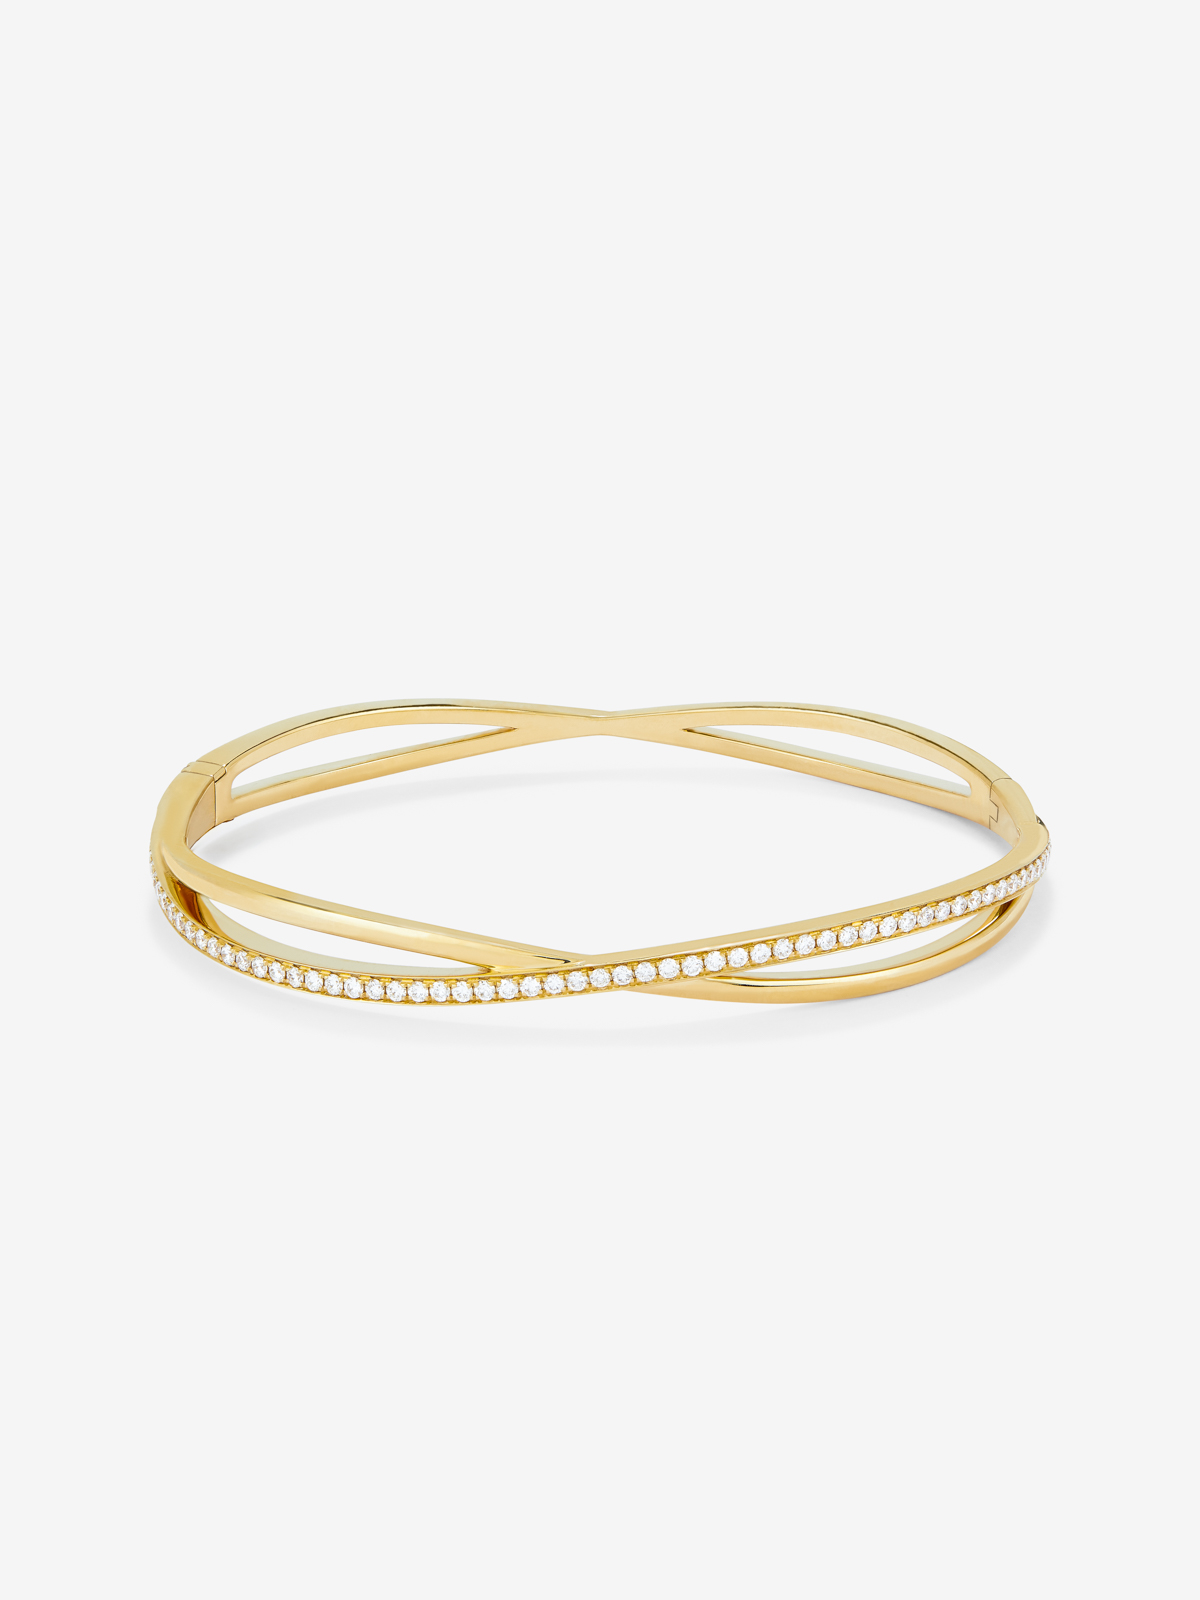 18kt yellow gold rigid bracelet with diamonds